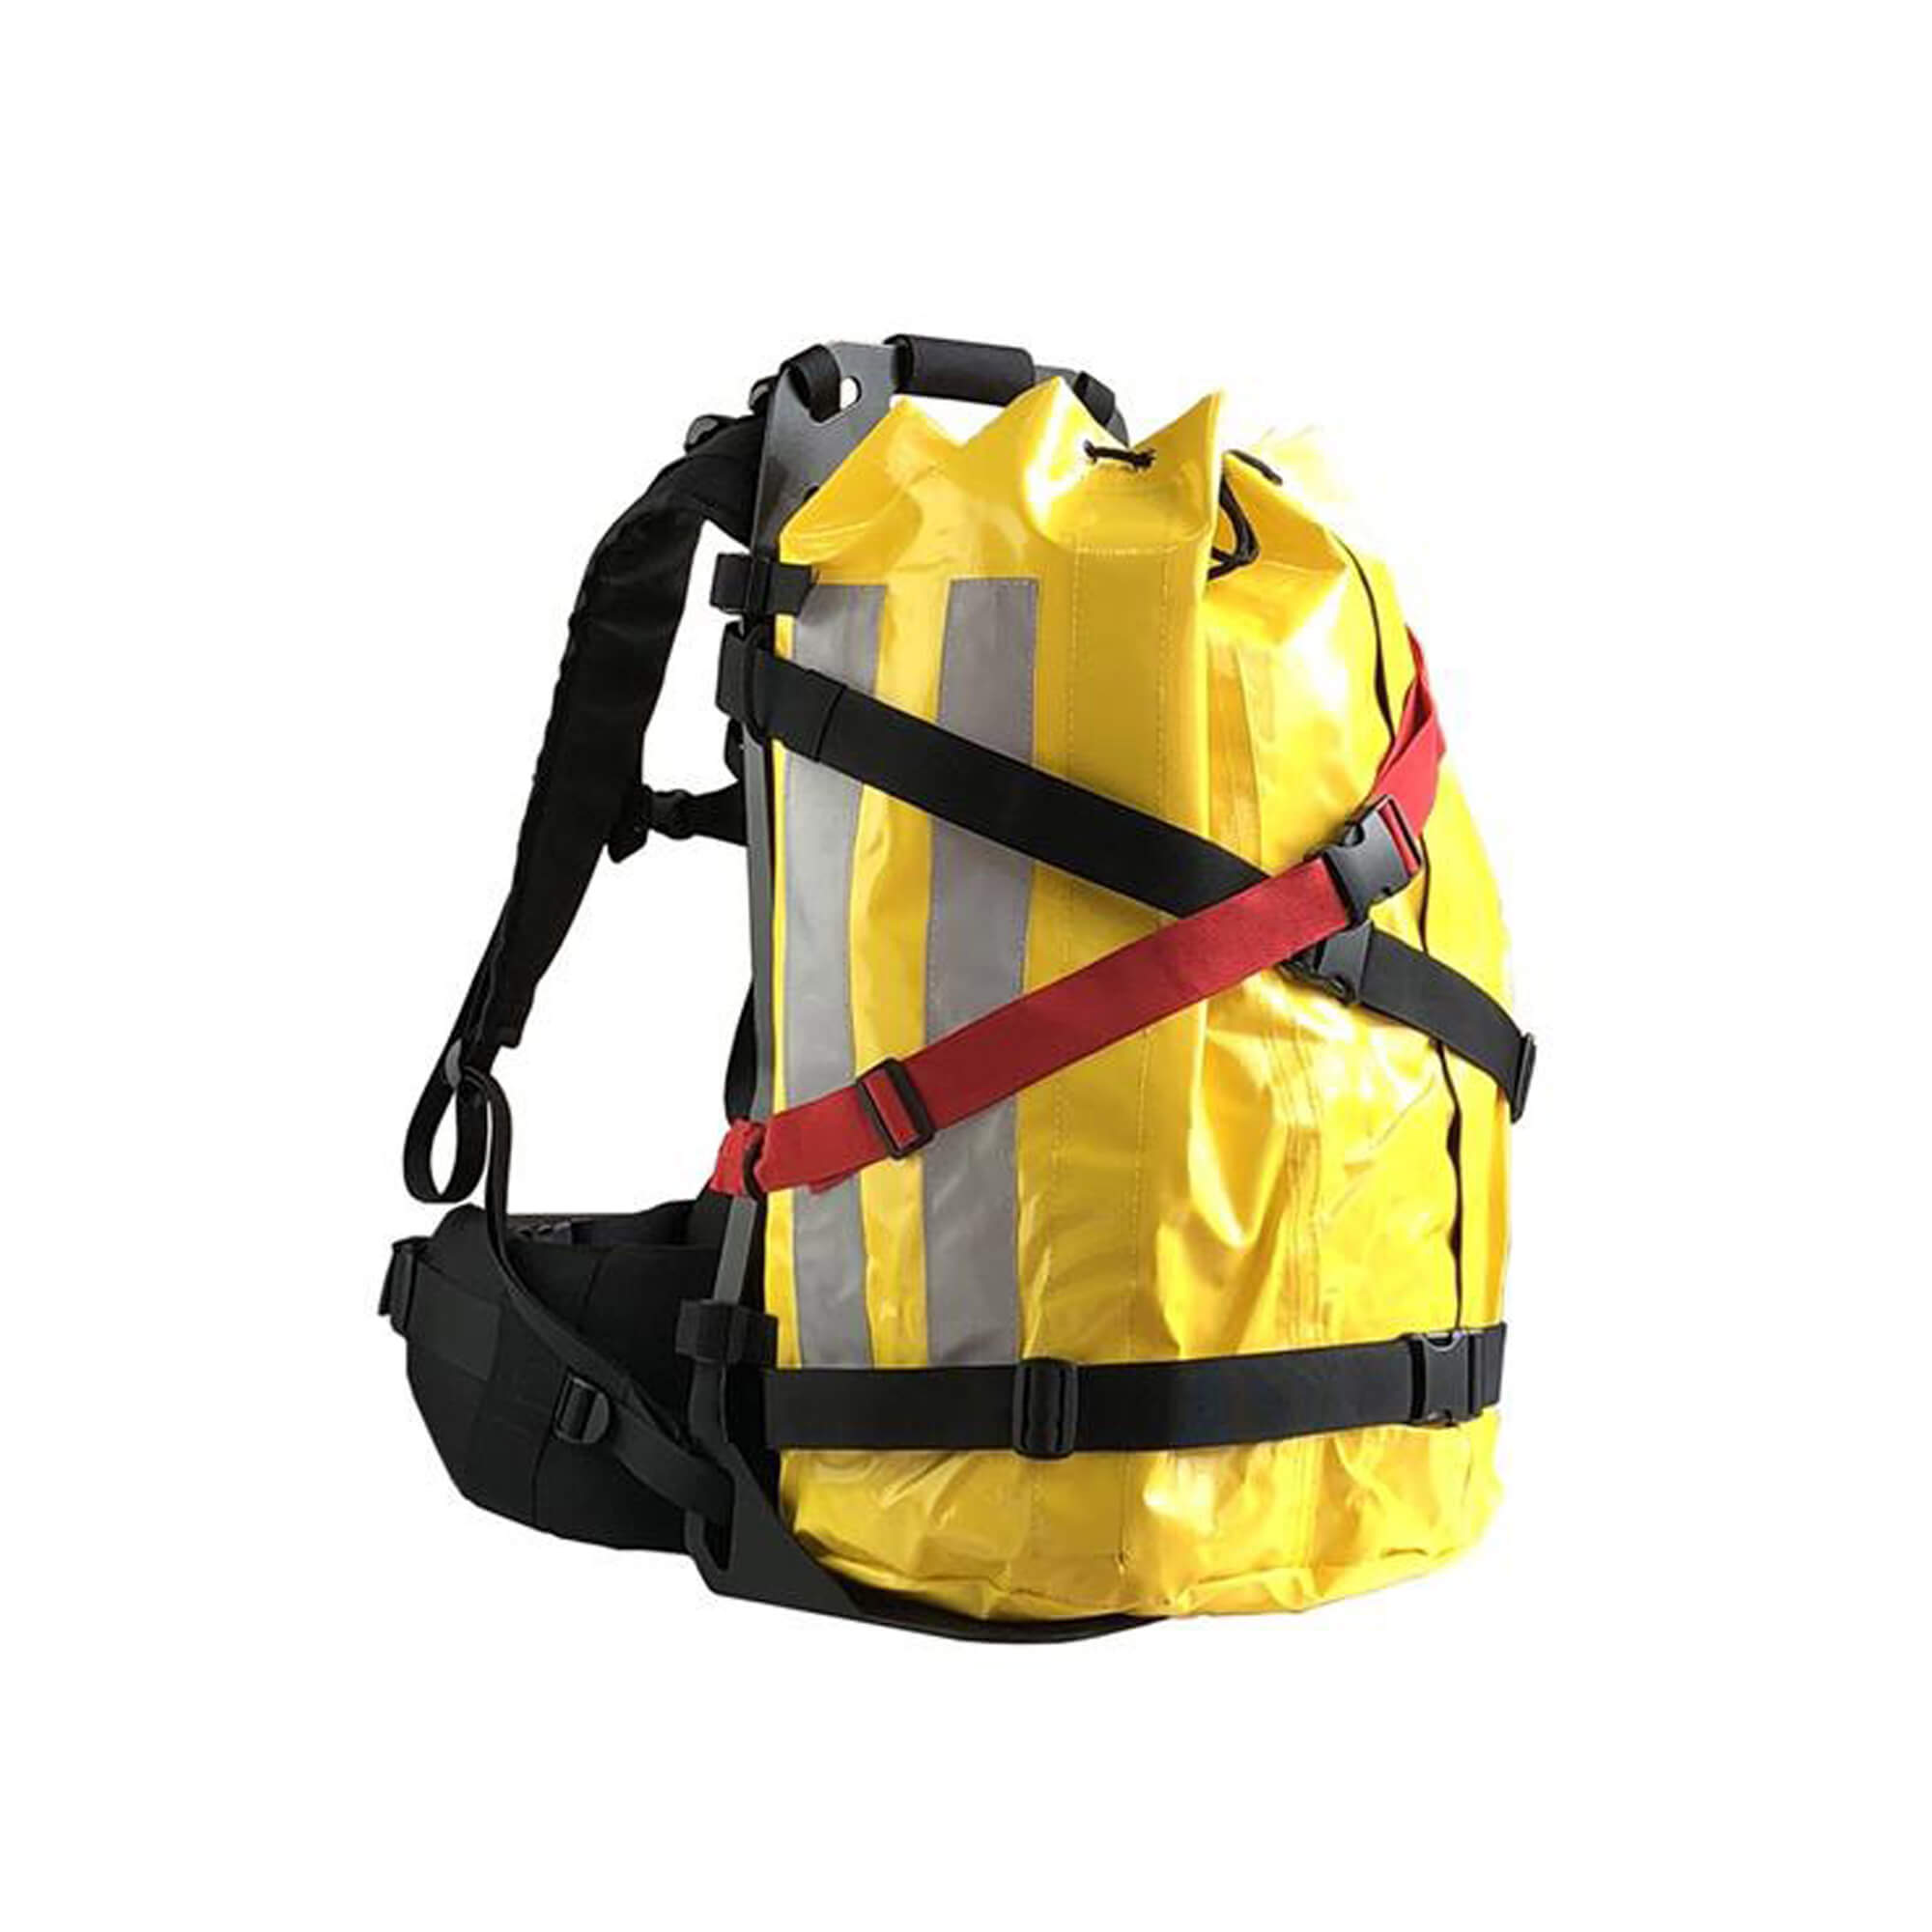 Backpack carrier for fire hoses Vft Vallfirest